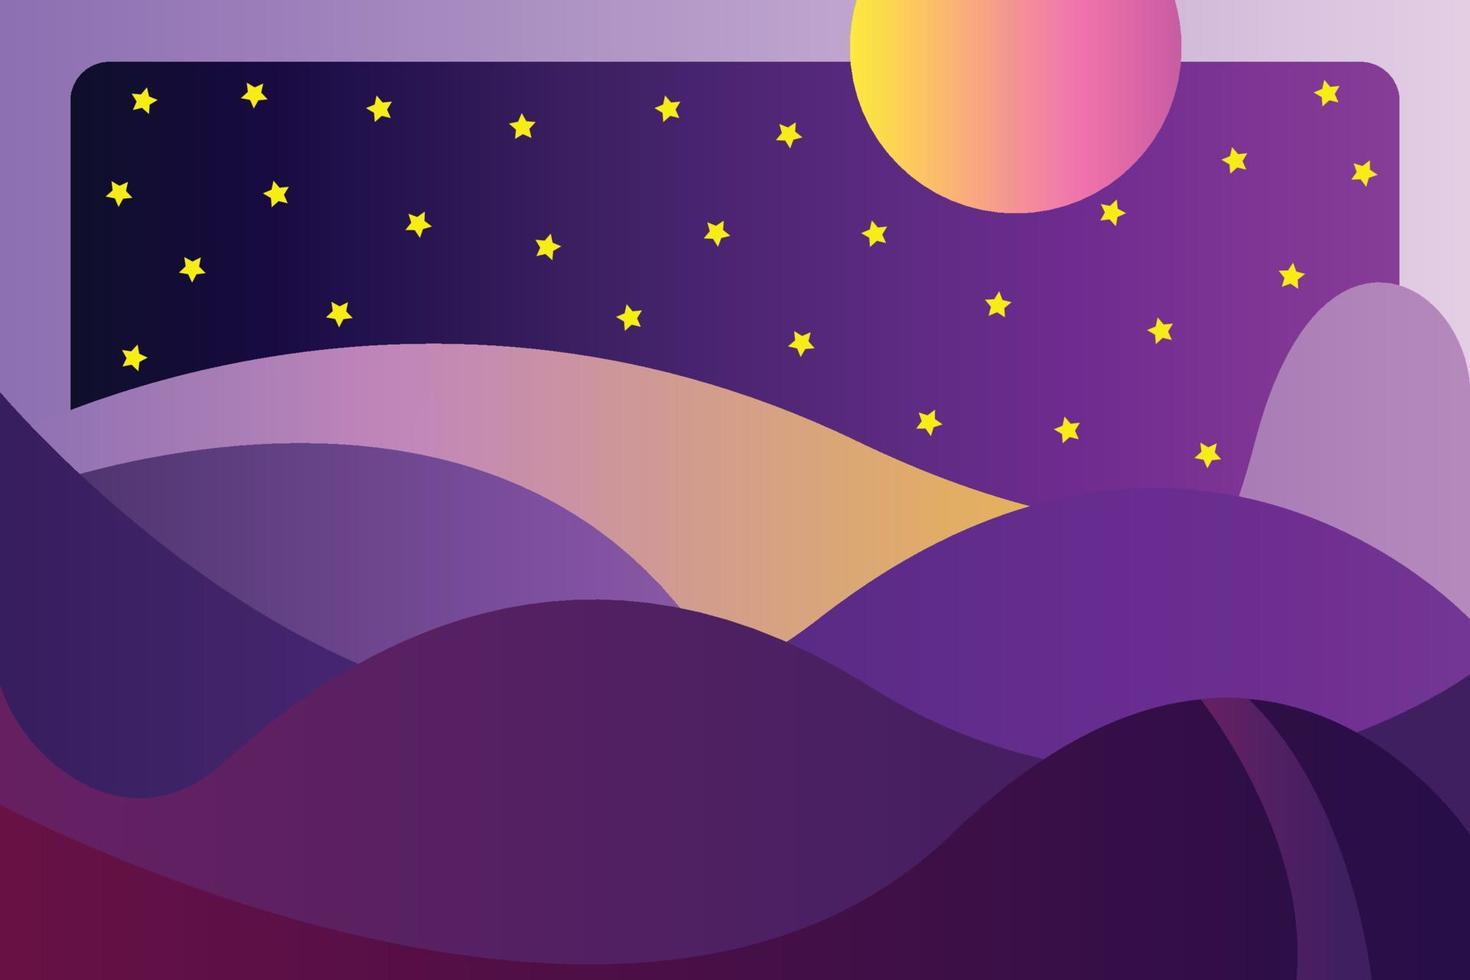 sterrennachtlandschap met berg- en maanachtergrondsjabloon voor spandoek of poster vector